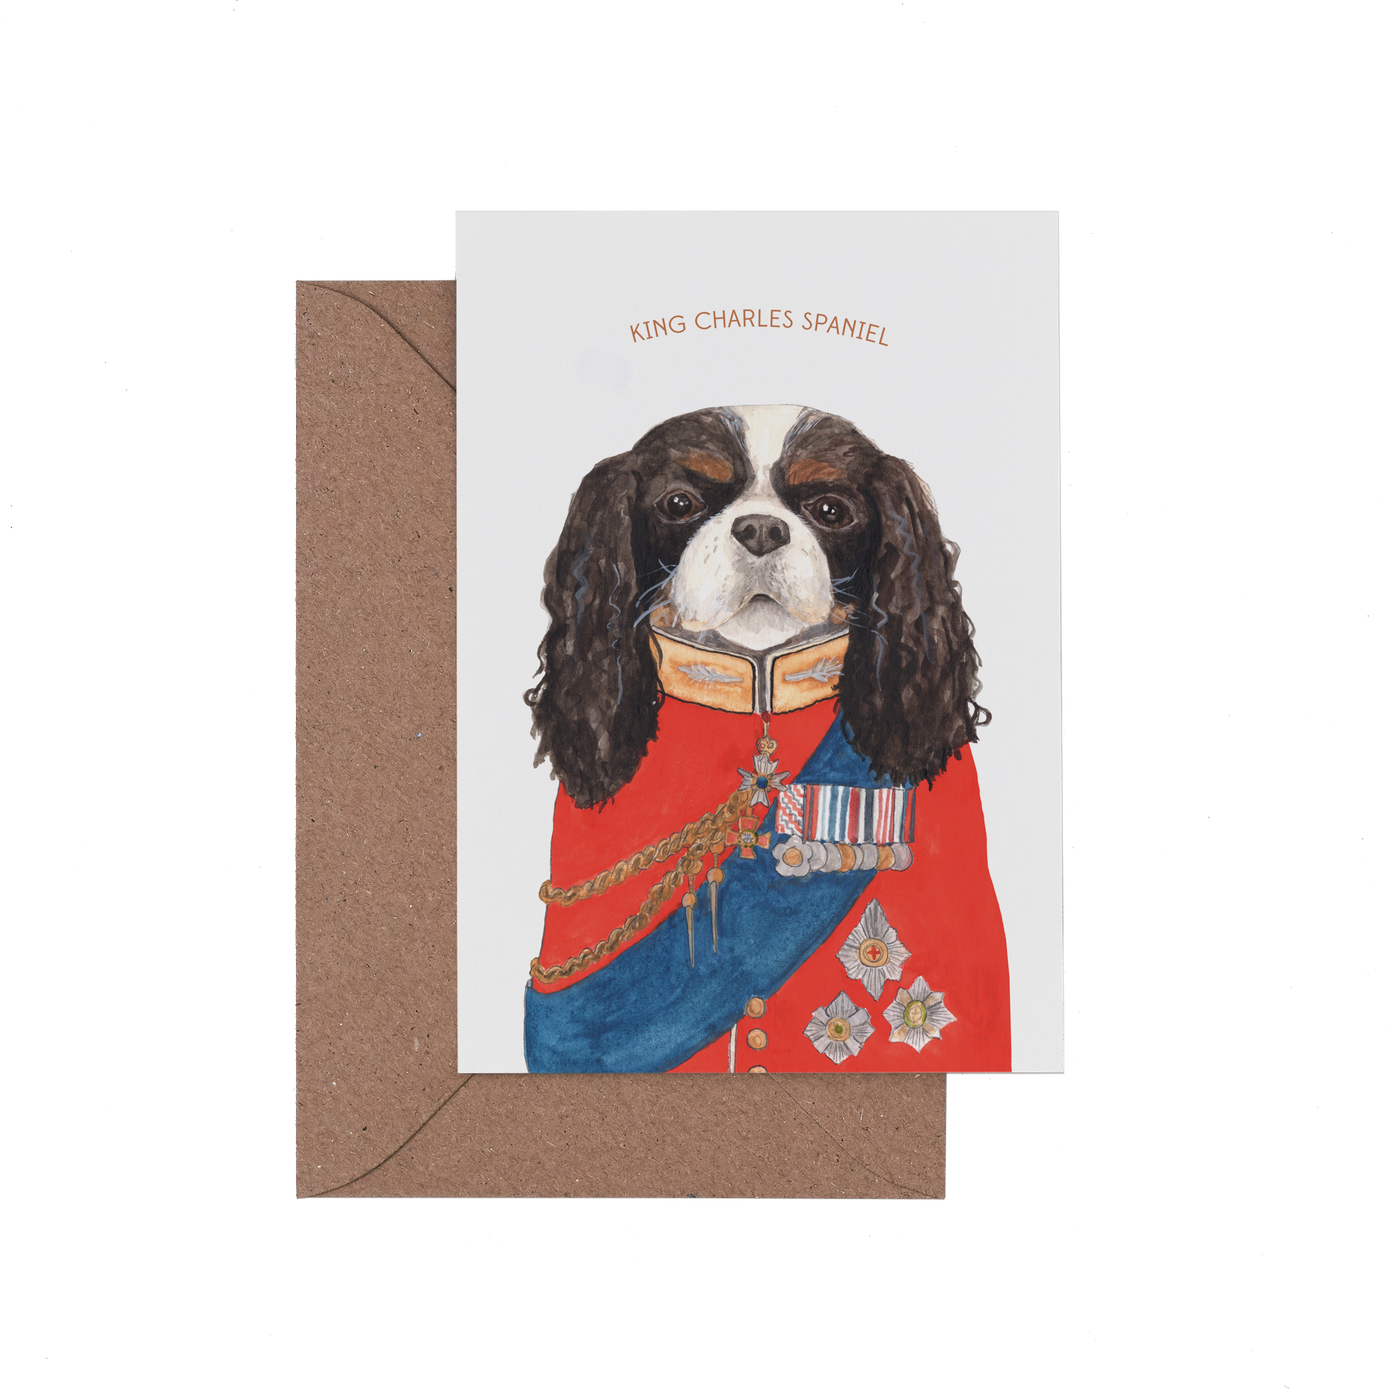 King Charles Spaniel Card